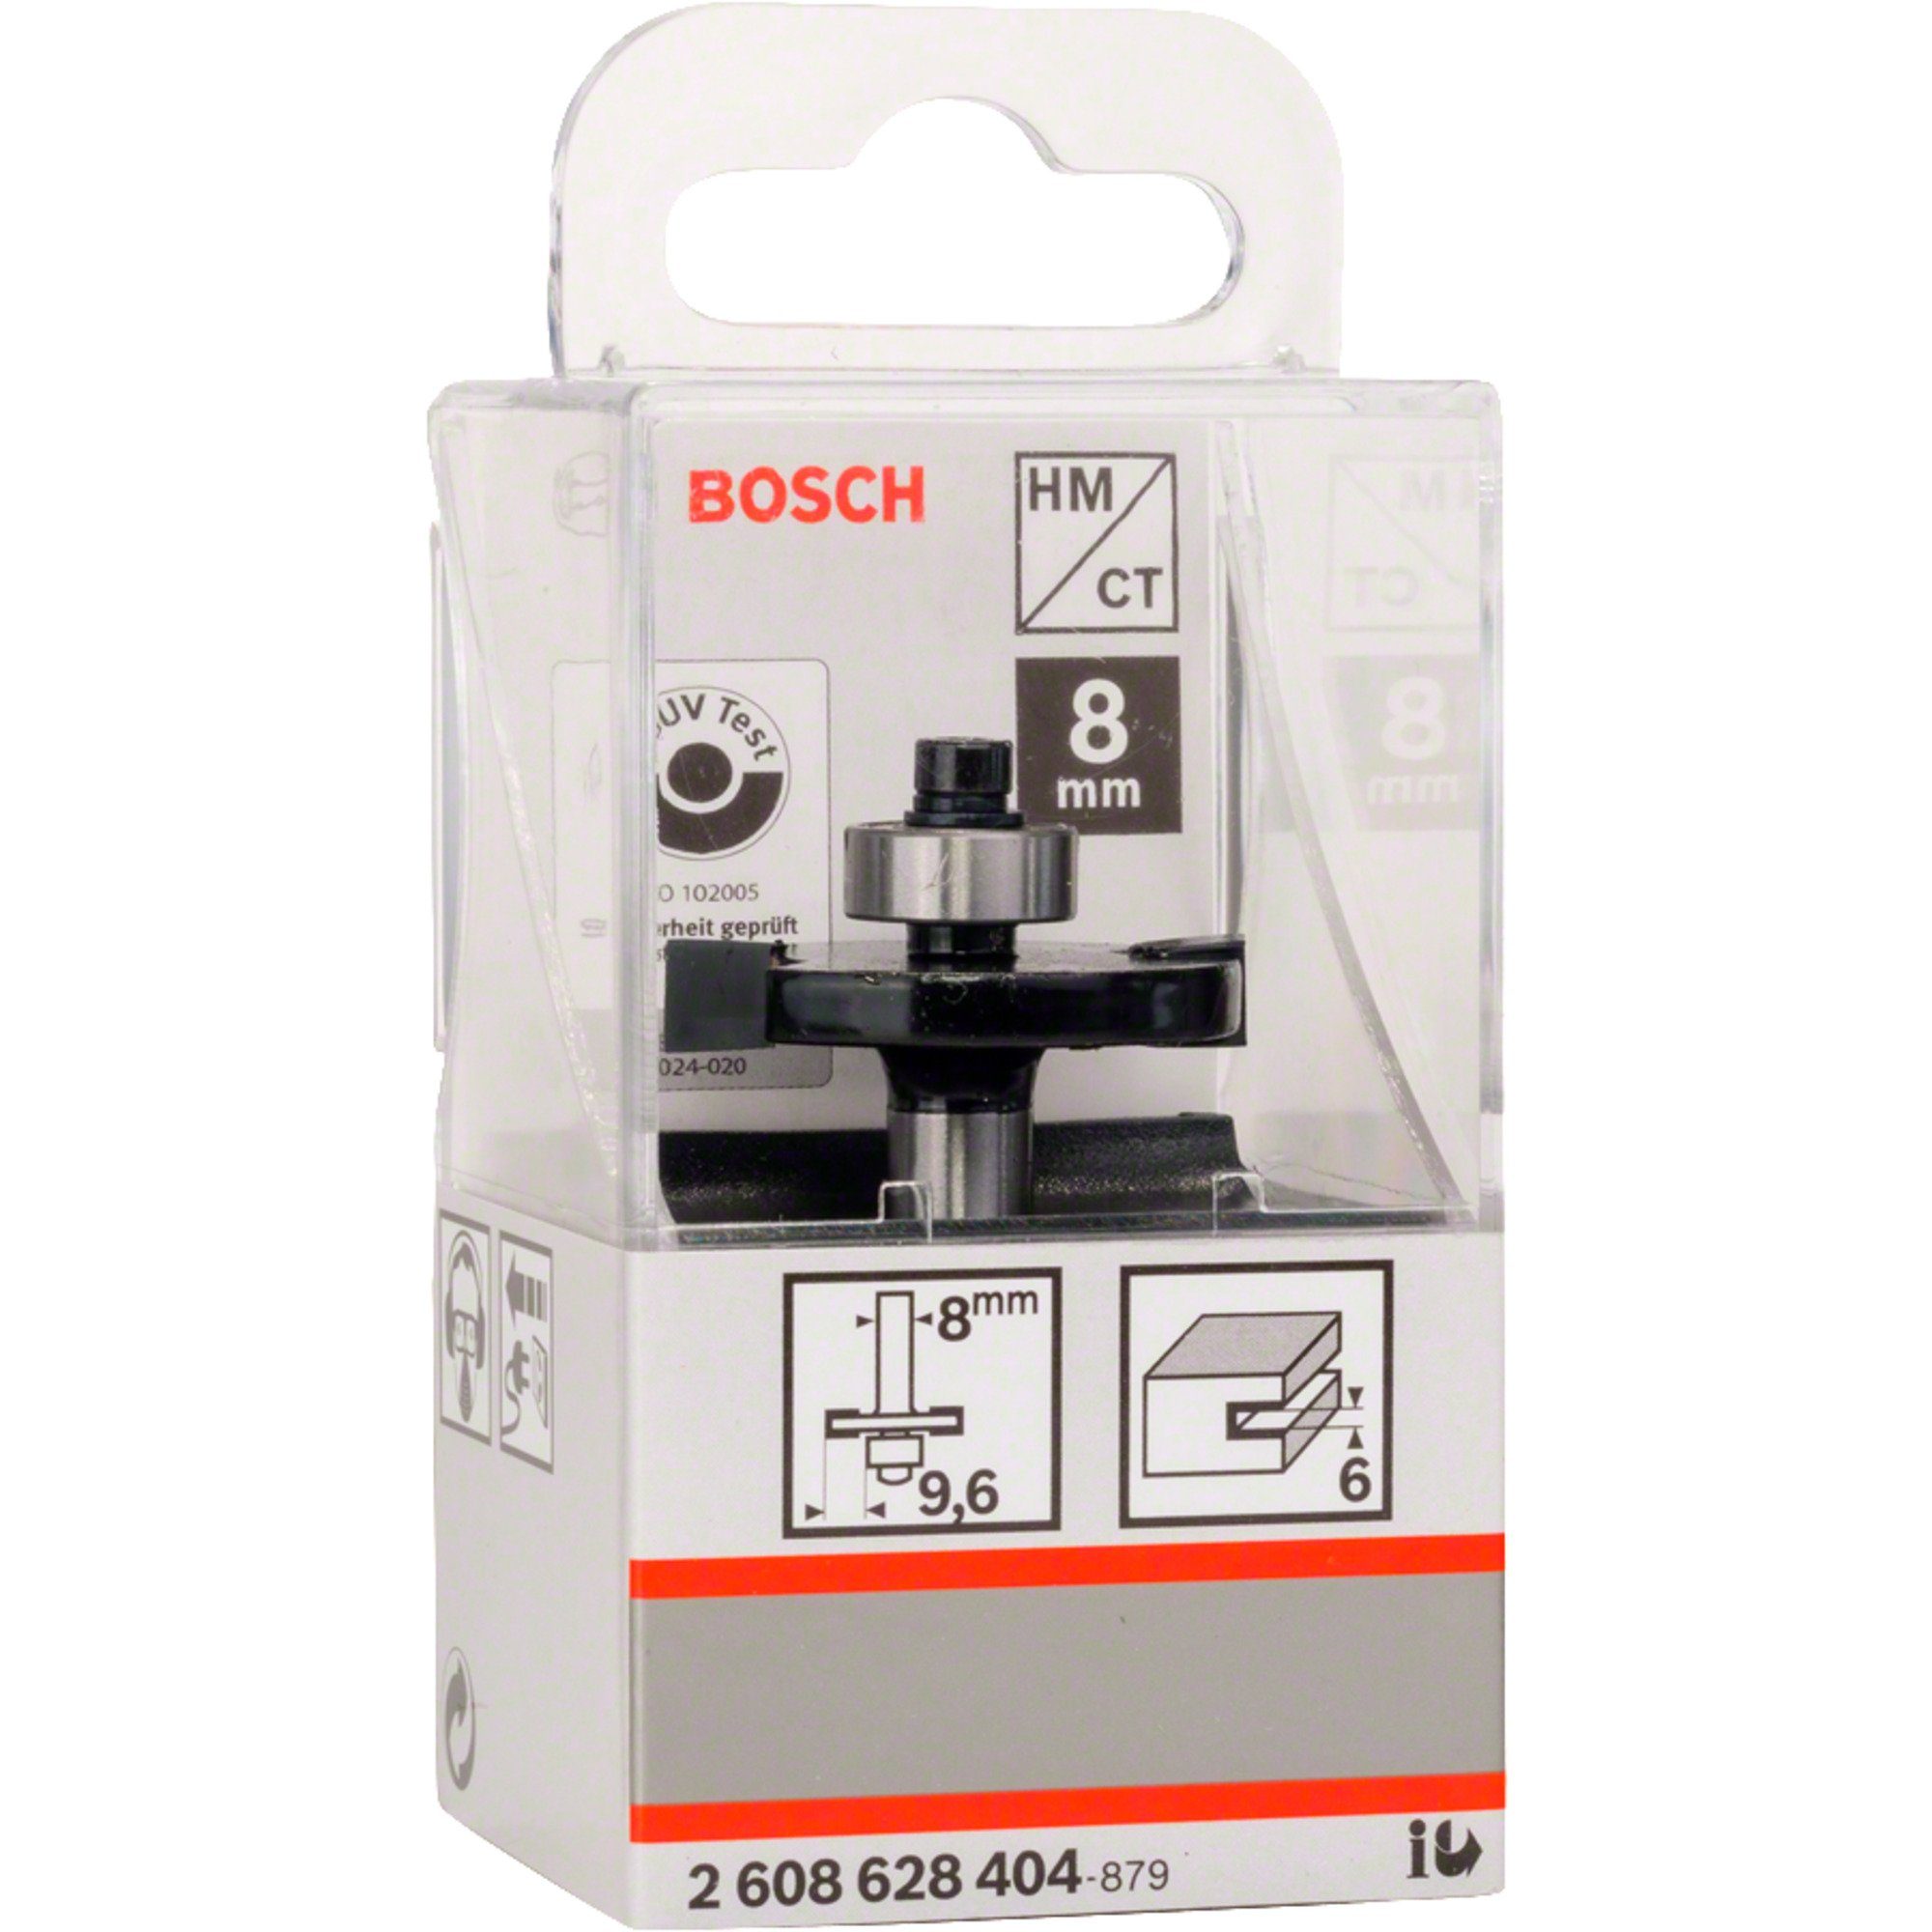 BOSCH Fräse Professional Scheiben-Nutfräser for Standard Bosch